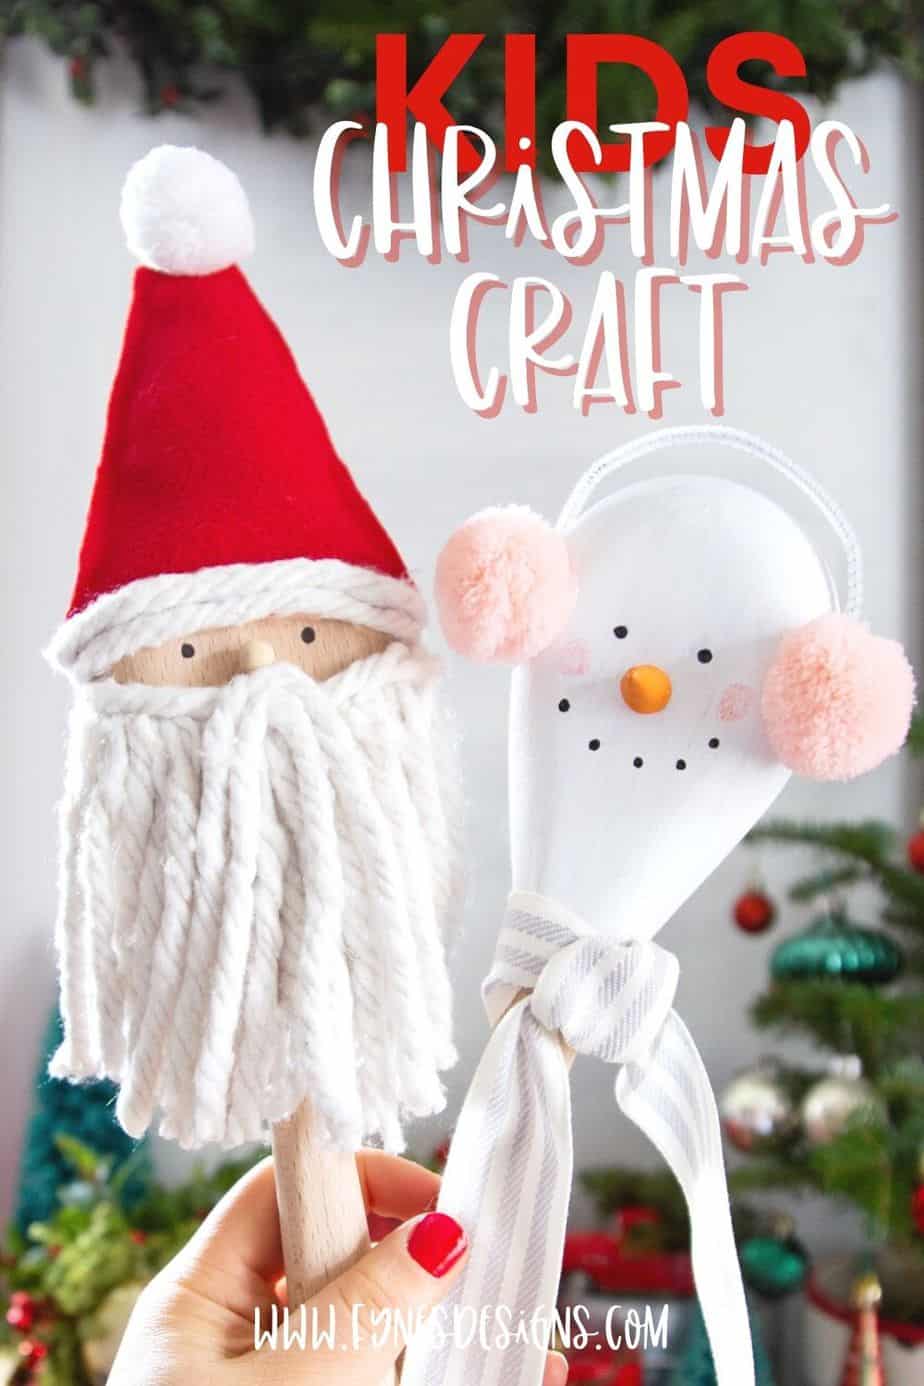 https://www.fynesdesigns.com/wp-content/uploads/2020/12/kids-christmas-craft.jpg